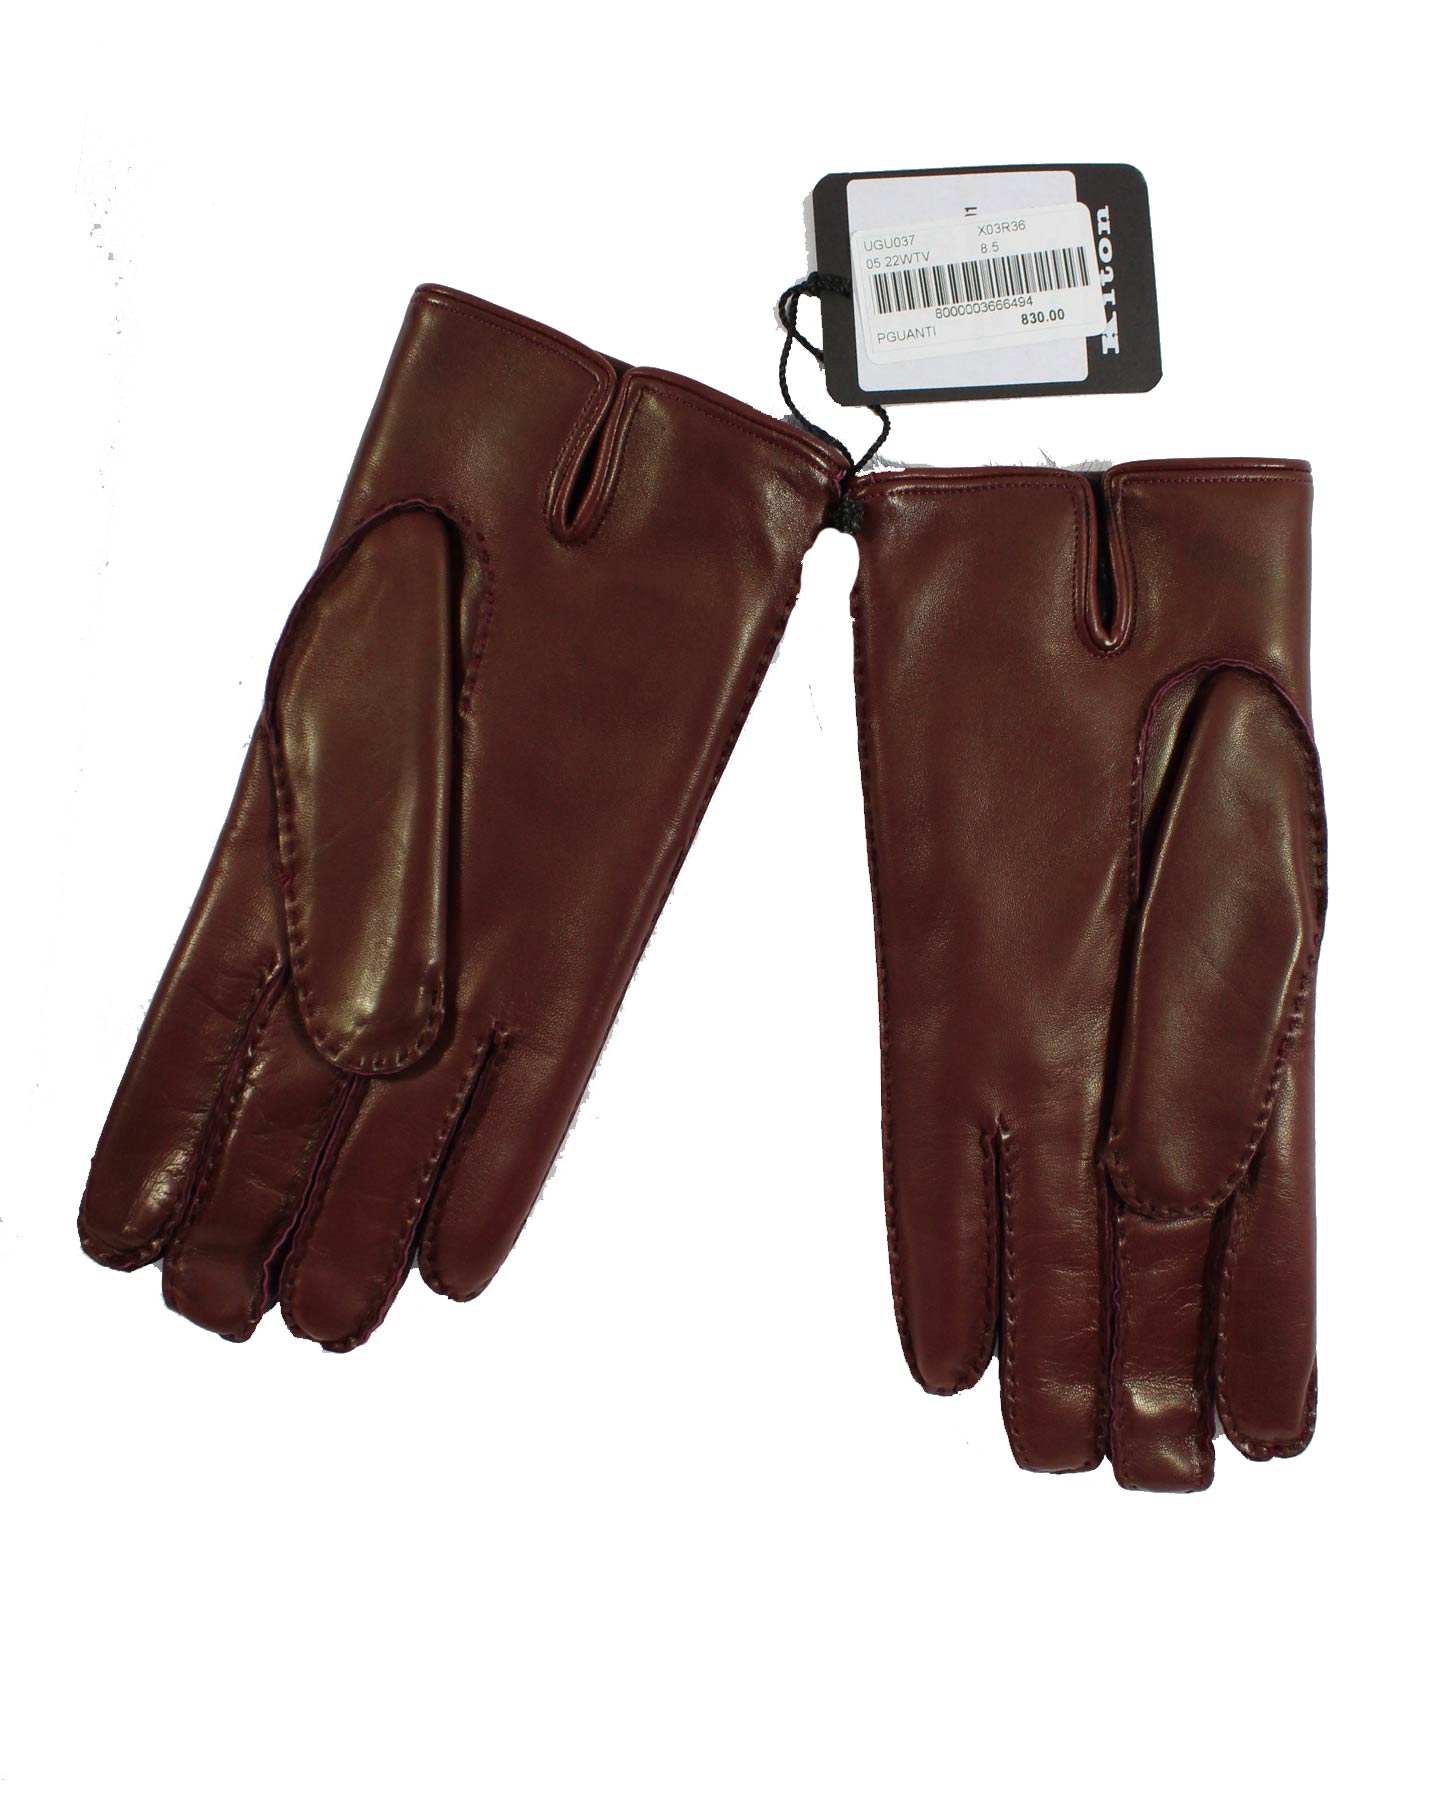 Kiton Men Gloves Maroon Leather S/M - 8 1/2